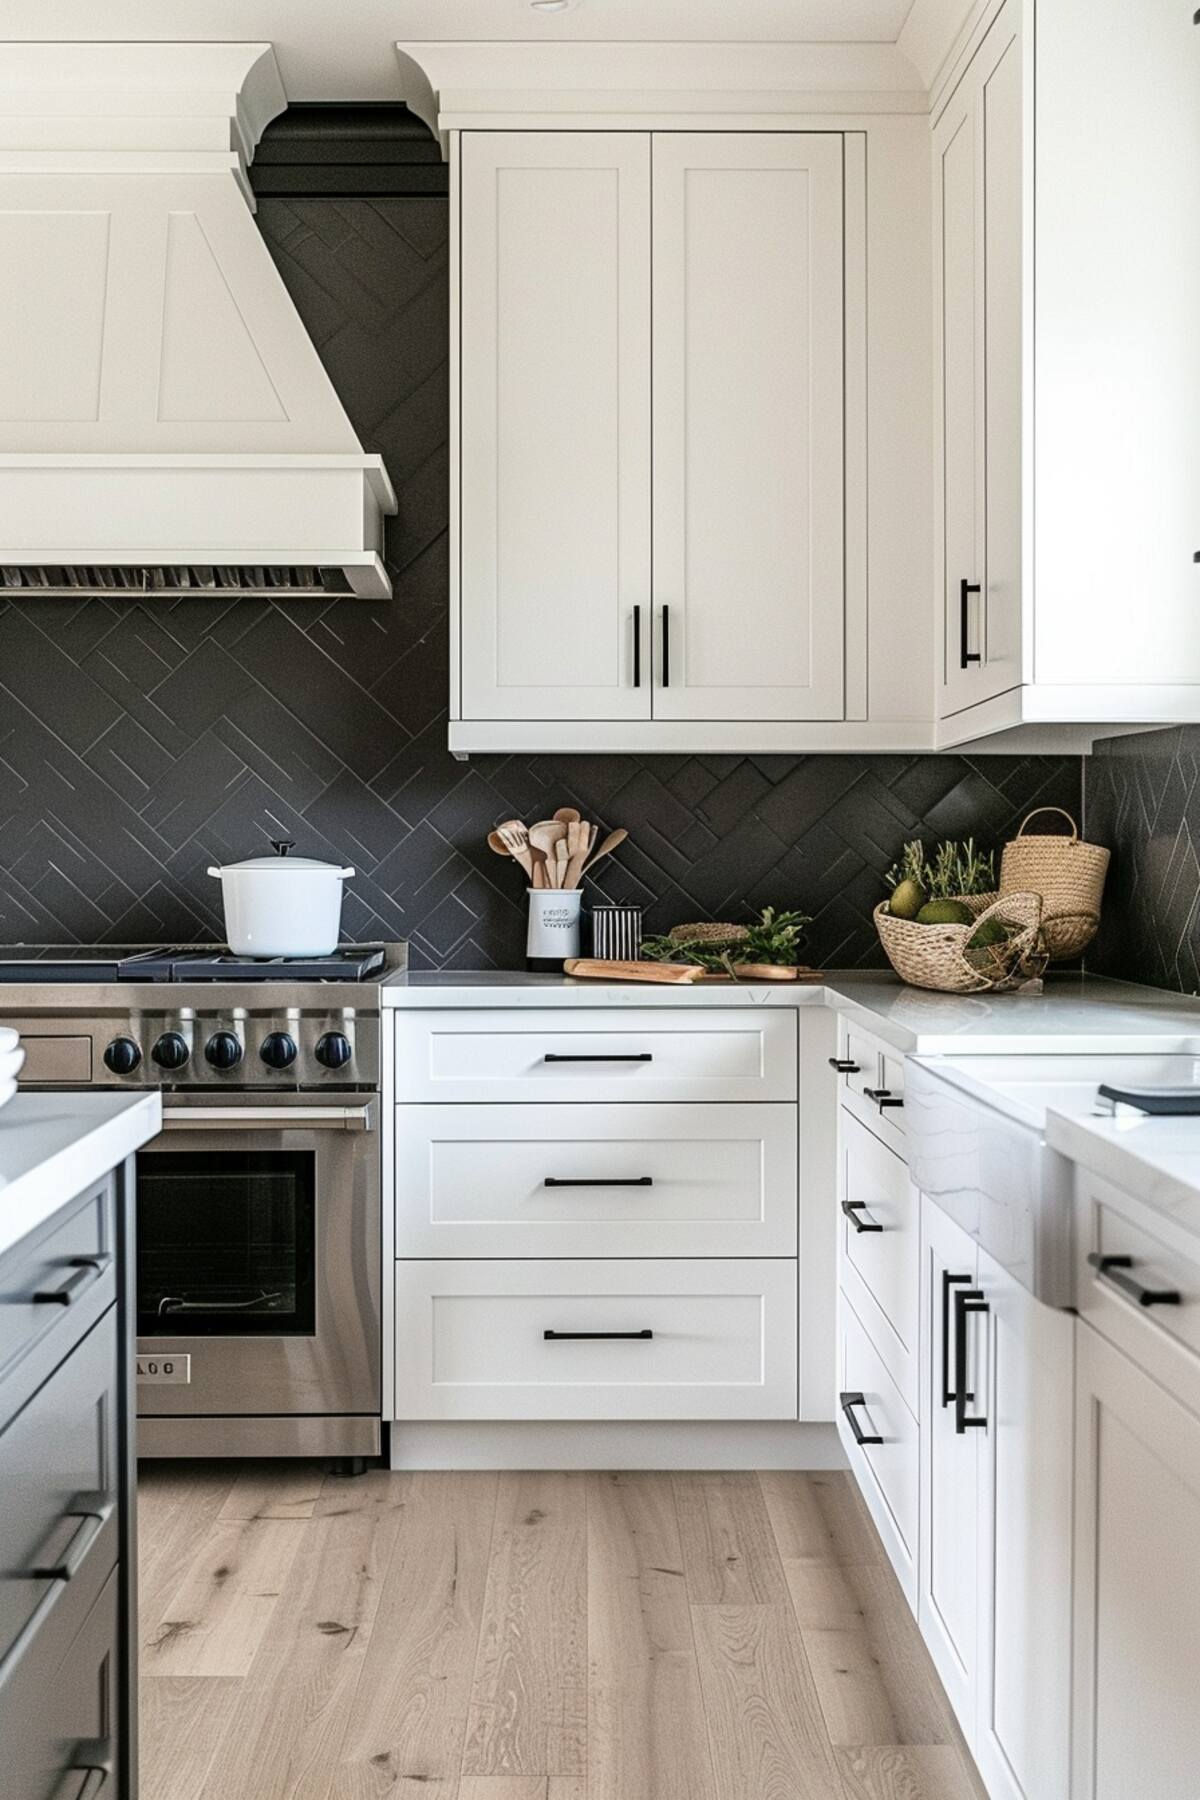 Contemporary Black And White Kitchen Monochrome Elegance in Modern Kitchen Design